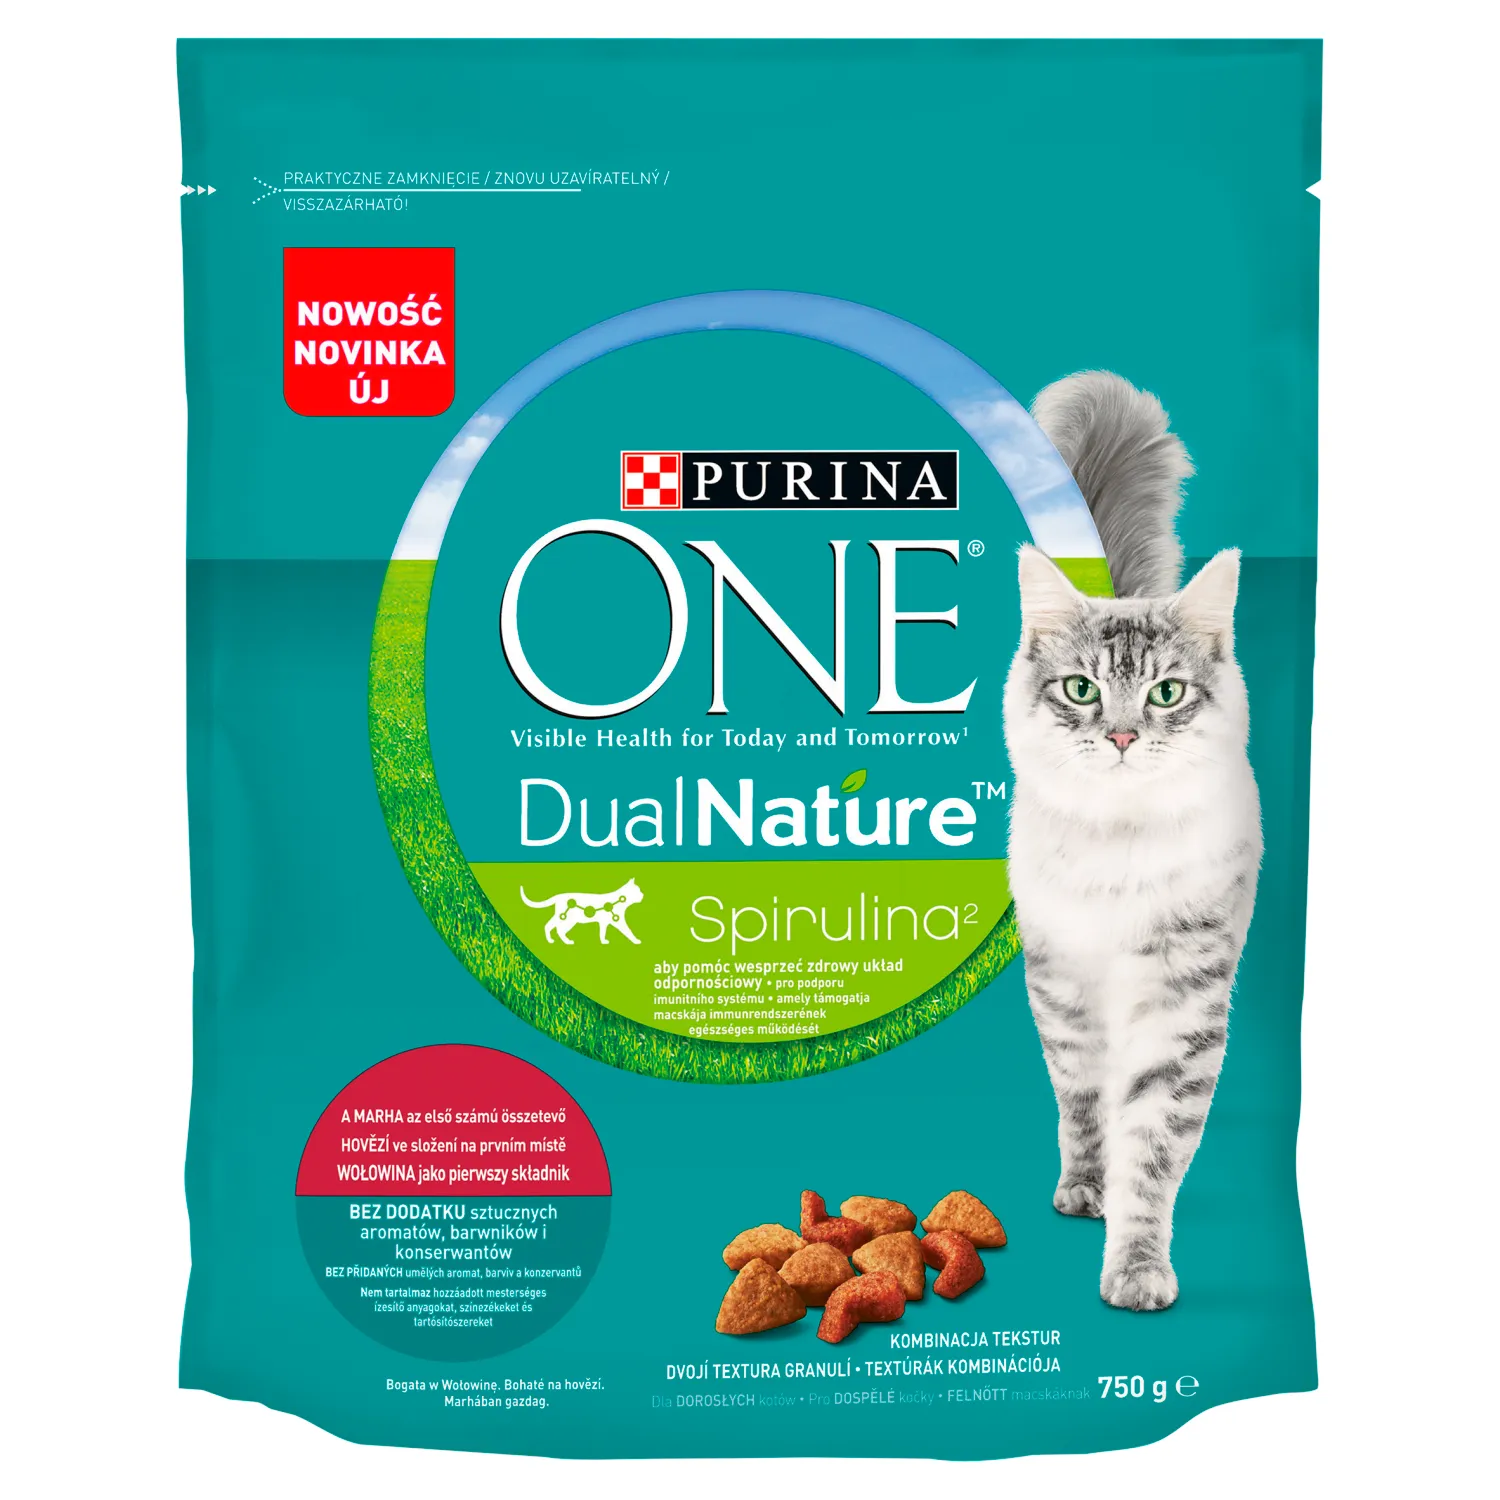 Purina ONE Dual Nature Spirulina Karma dla dorosłych kotów wołowina jako pierwszy składnik, 750 g. Data ważności 31.05.2024